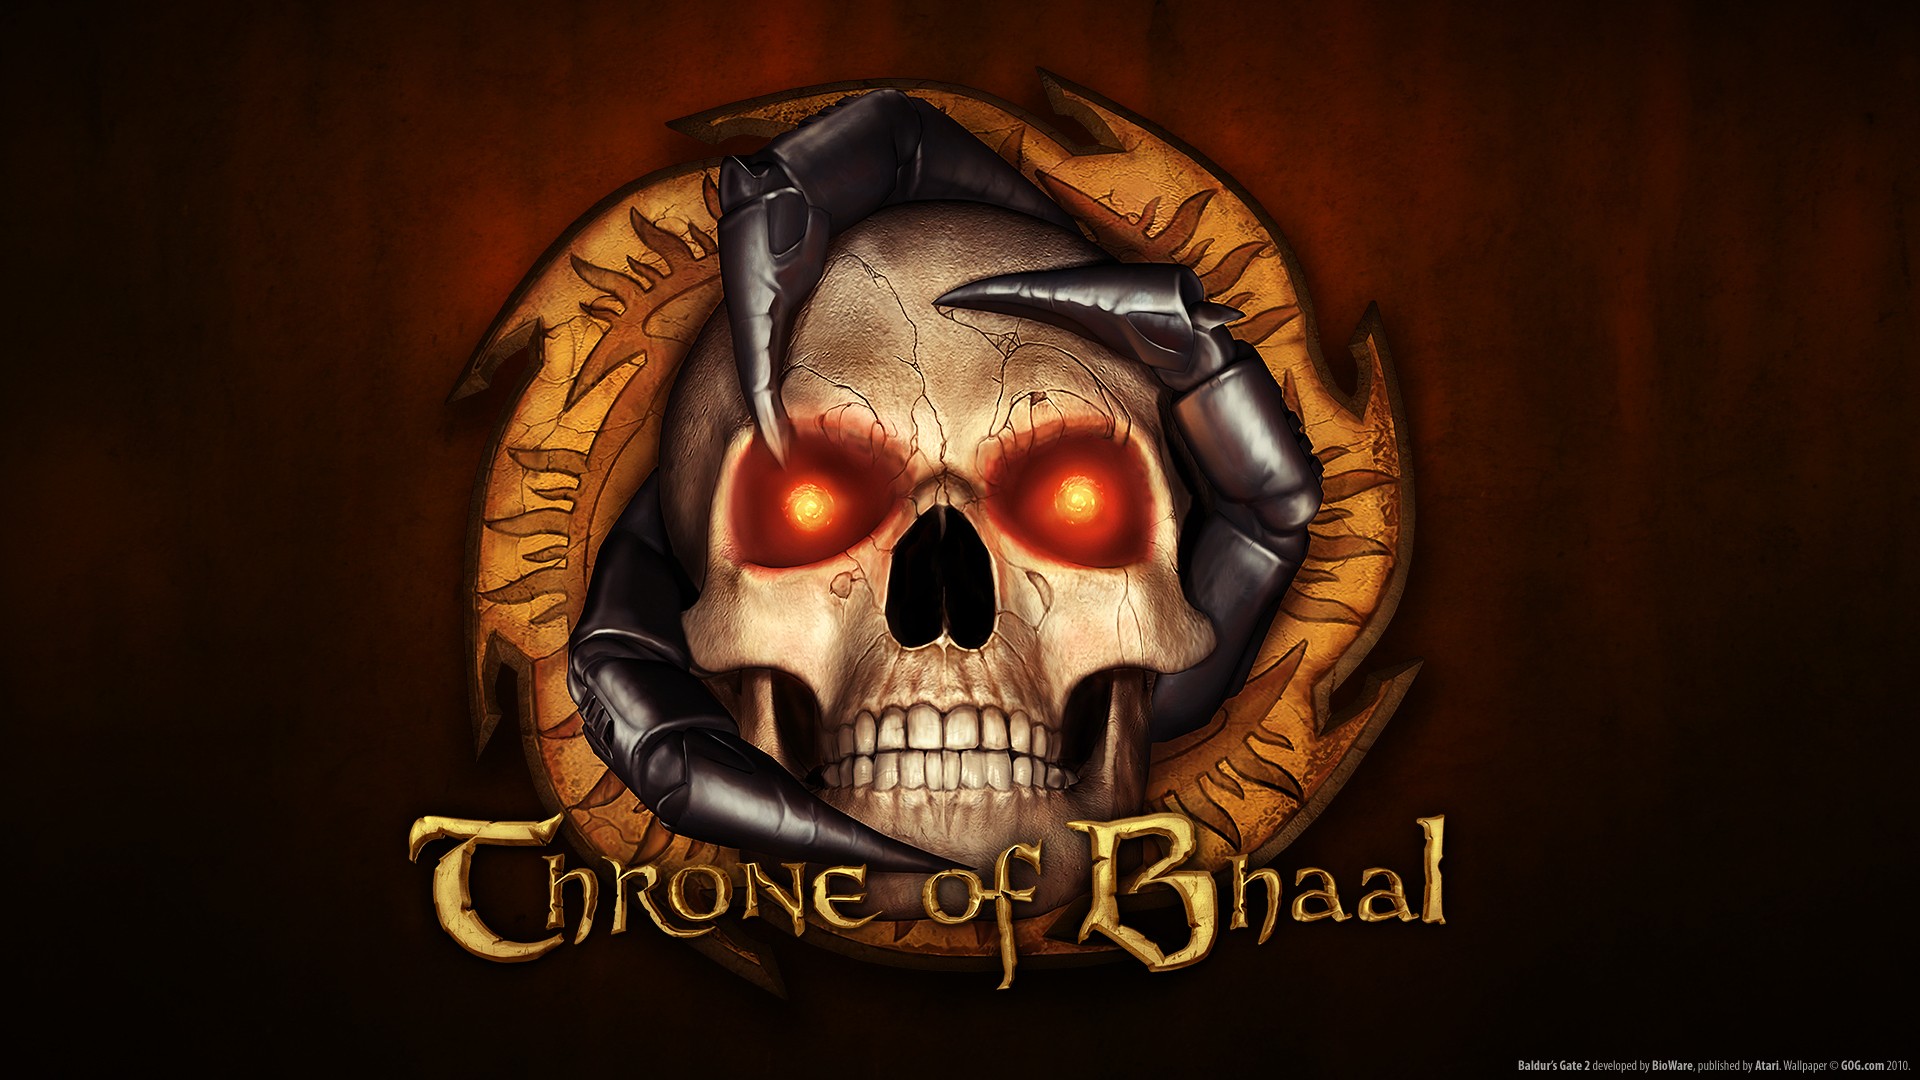 Baldur's Gate II: Shadows of Amn: Throne of Bhaal